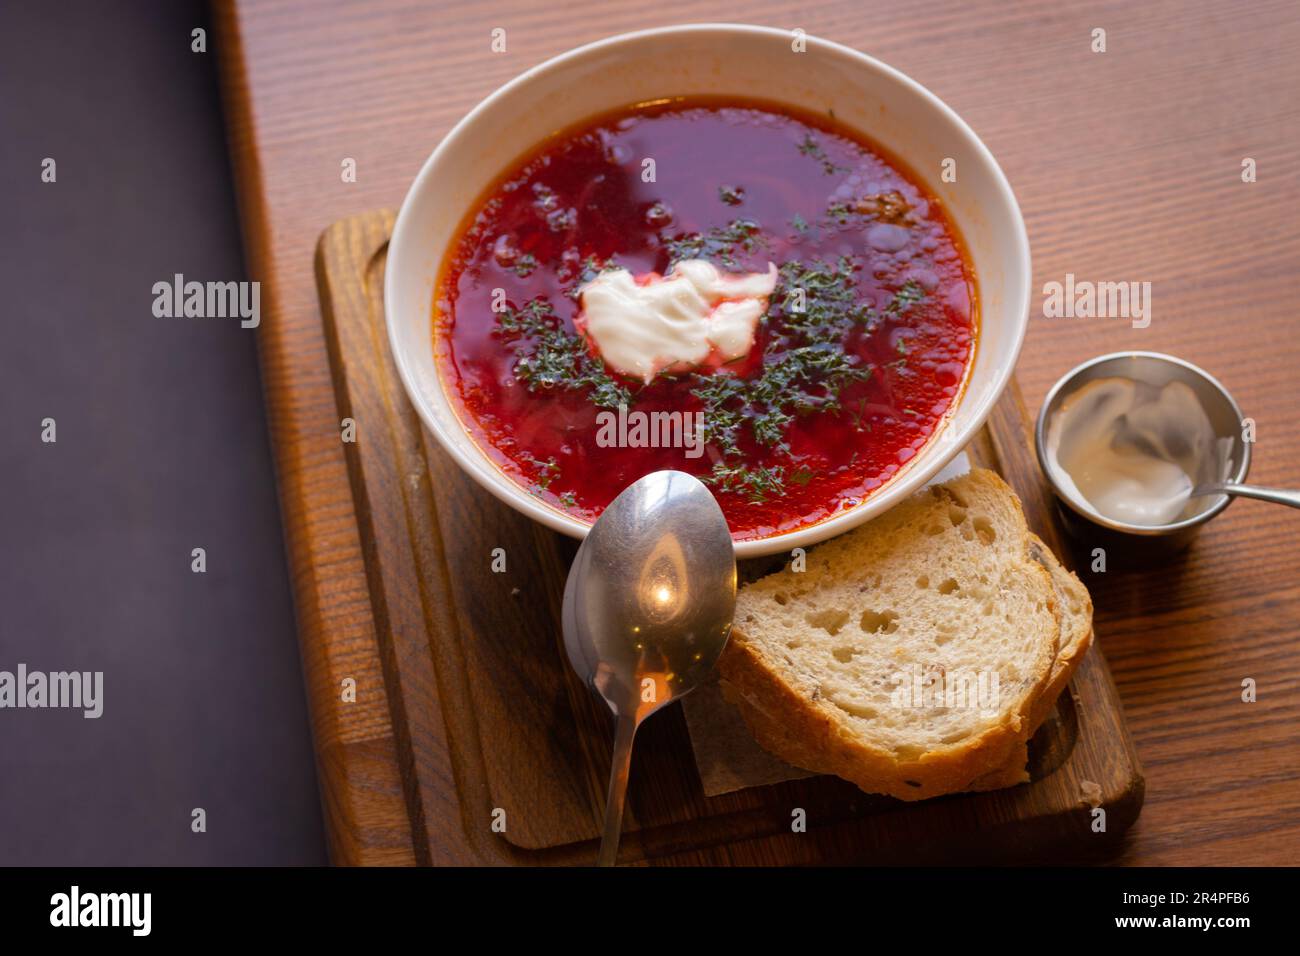 Ukrainischer Borsch mit Brot auf Holztisch. Rote Suppe mit Sahne und Brot. Ukrainisches traditionelles Essen. Hausgemachter Borscht. Tomatensuppe zum Abendessen. Stockfoto